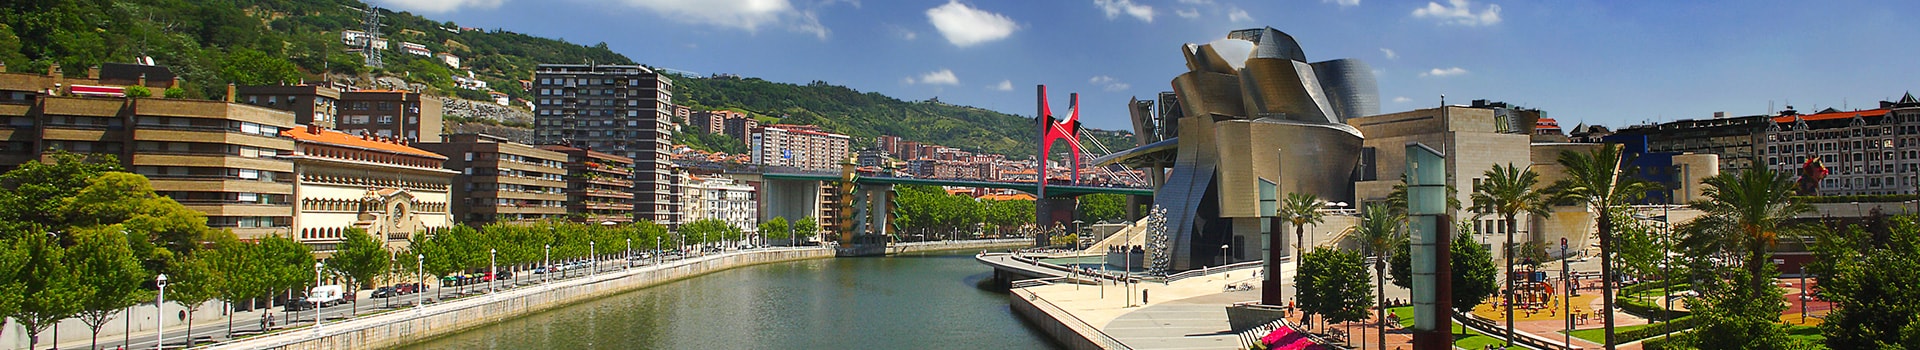 Frankfurt - Bilbao